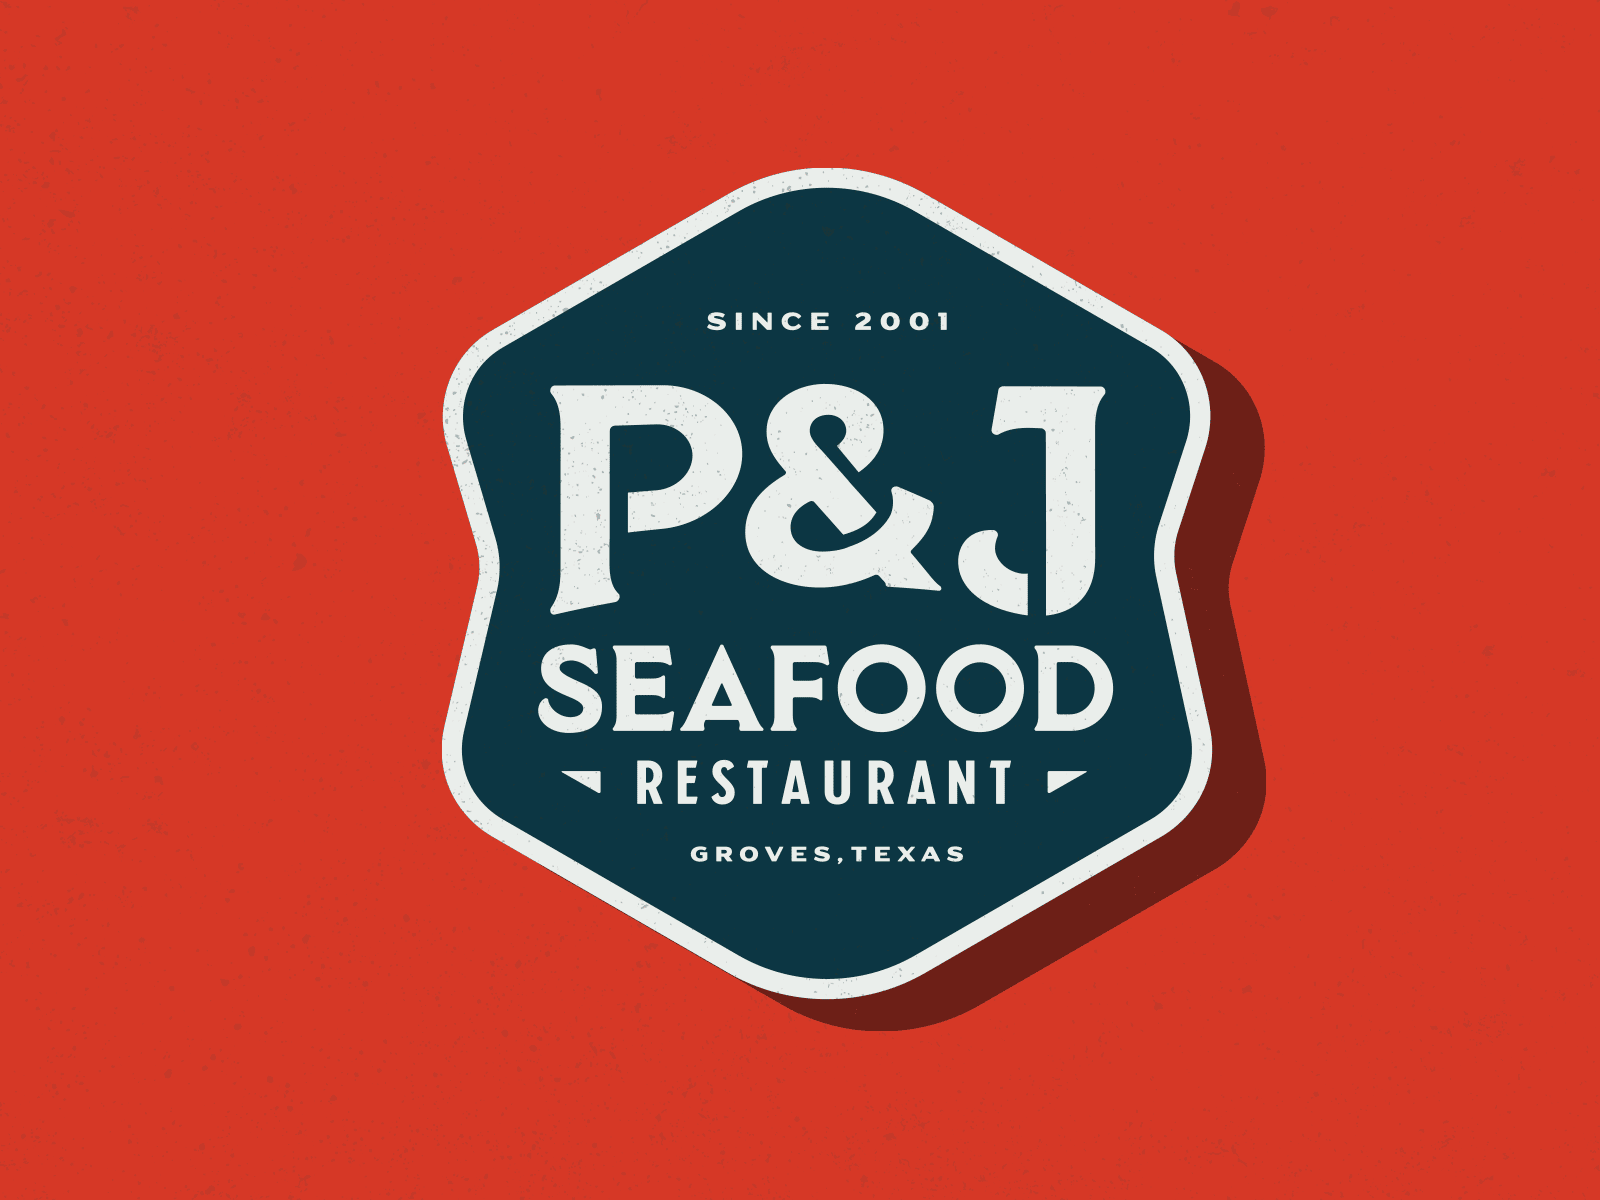 P&J Seafood Logo - 2.0 branding clean logo logo design branding logodesign seafood